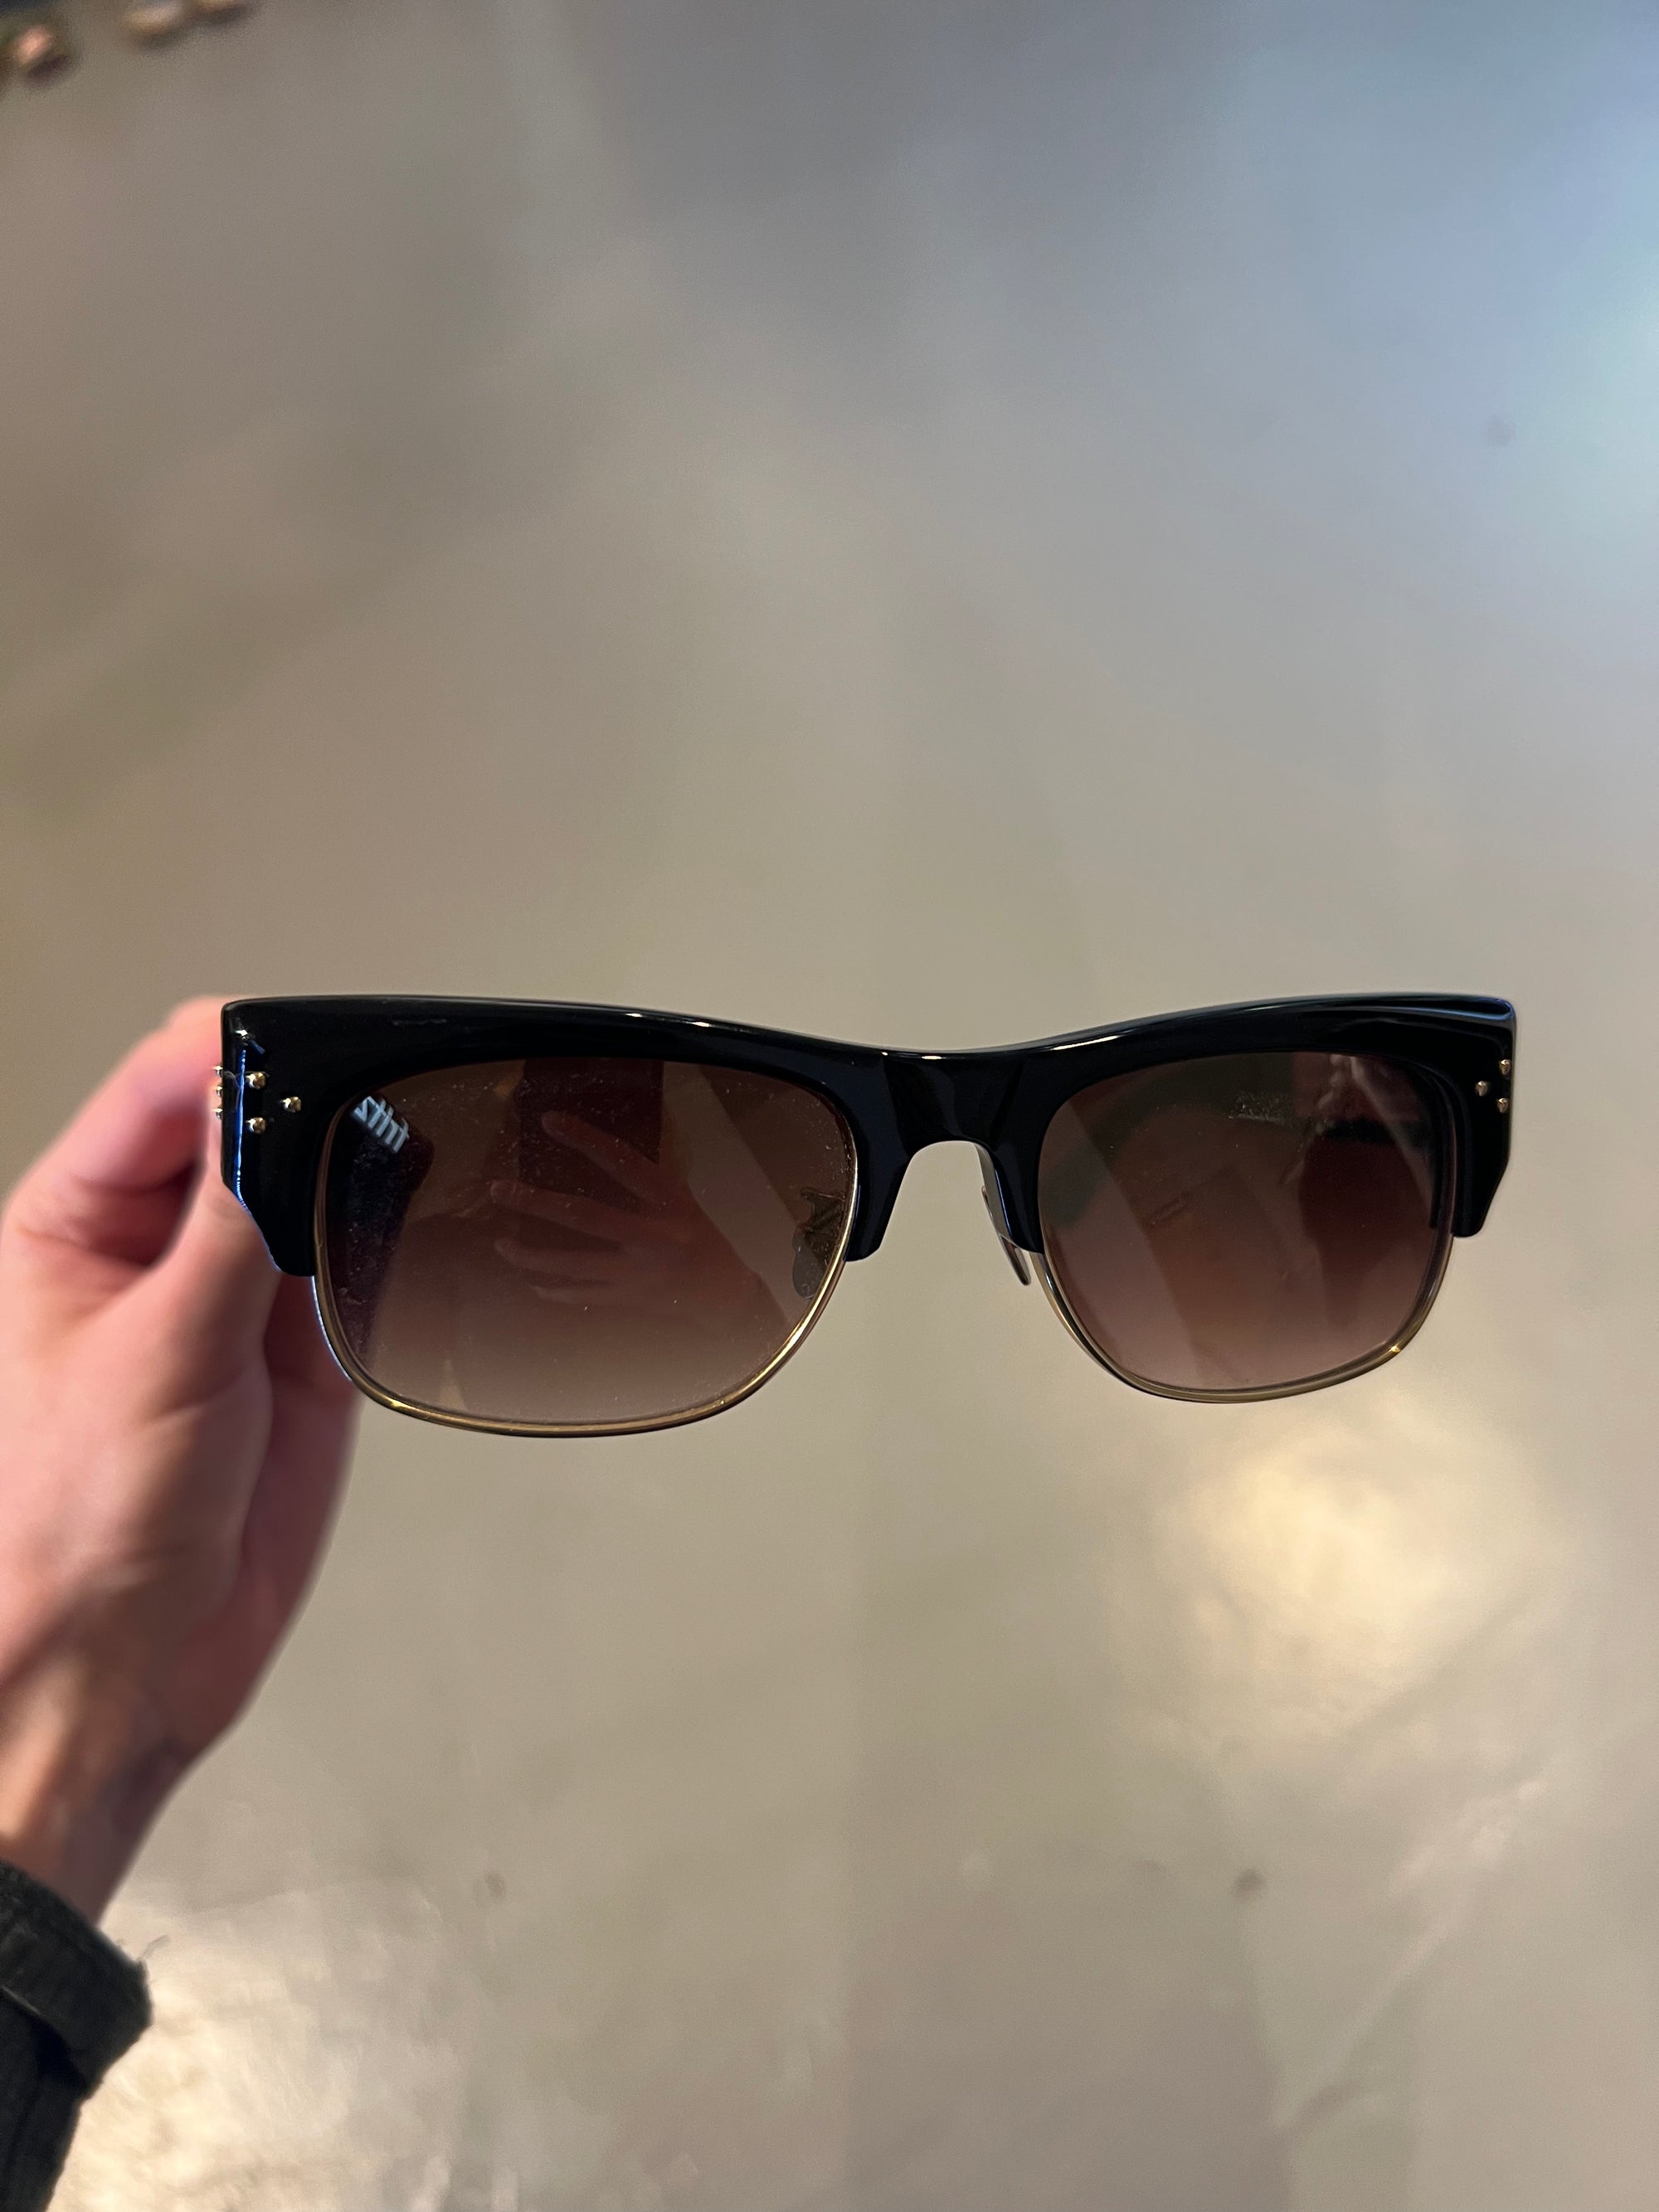 Produktbild von einer Vintage Linda Farrow Sonnenbrille vor grauem Hintergrund.